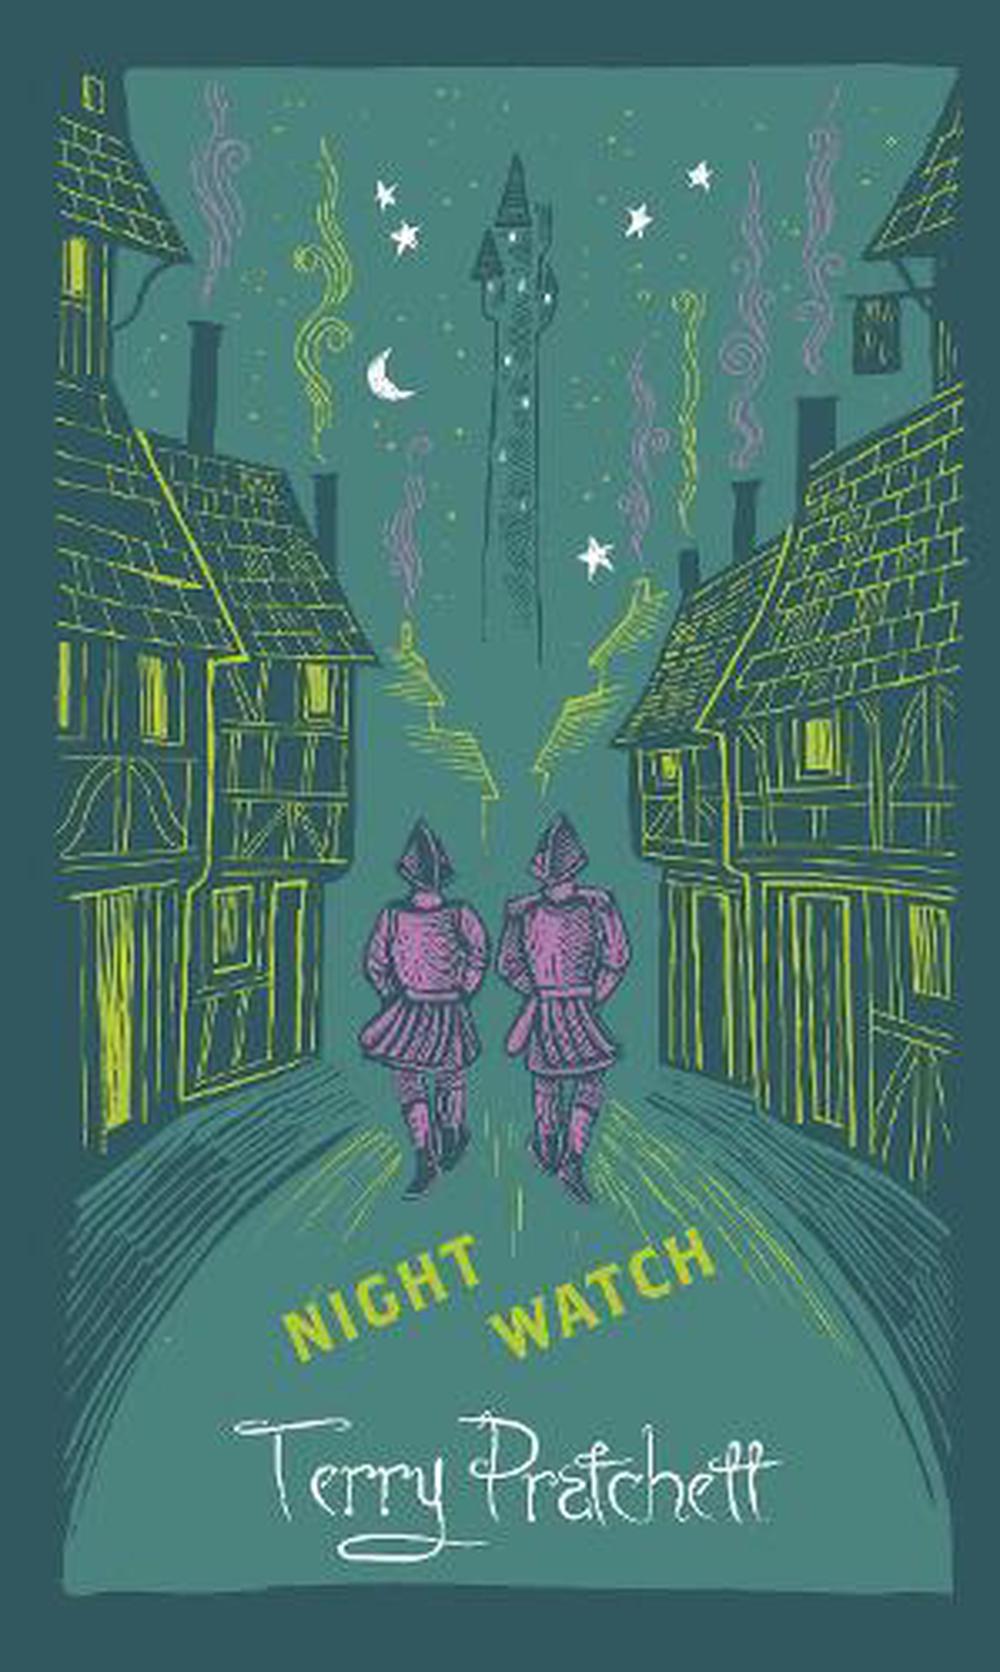 download terry pratchett nightwatch